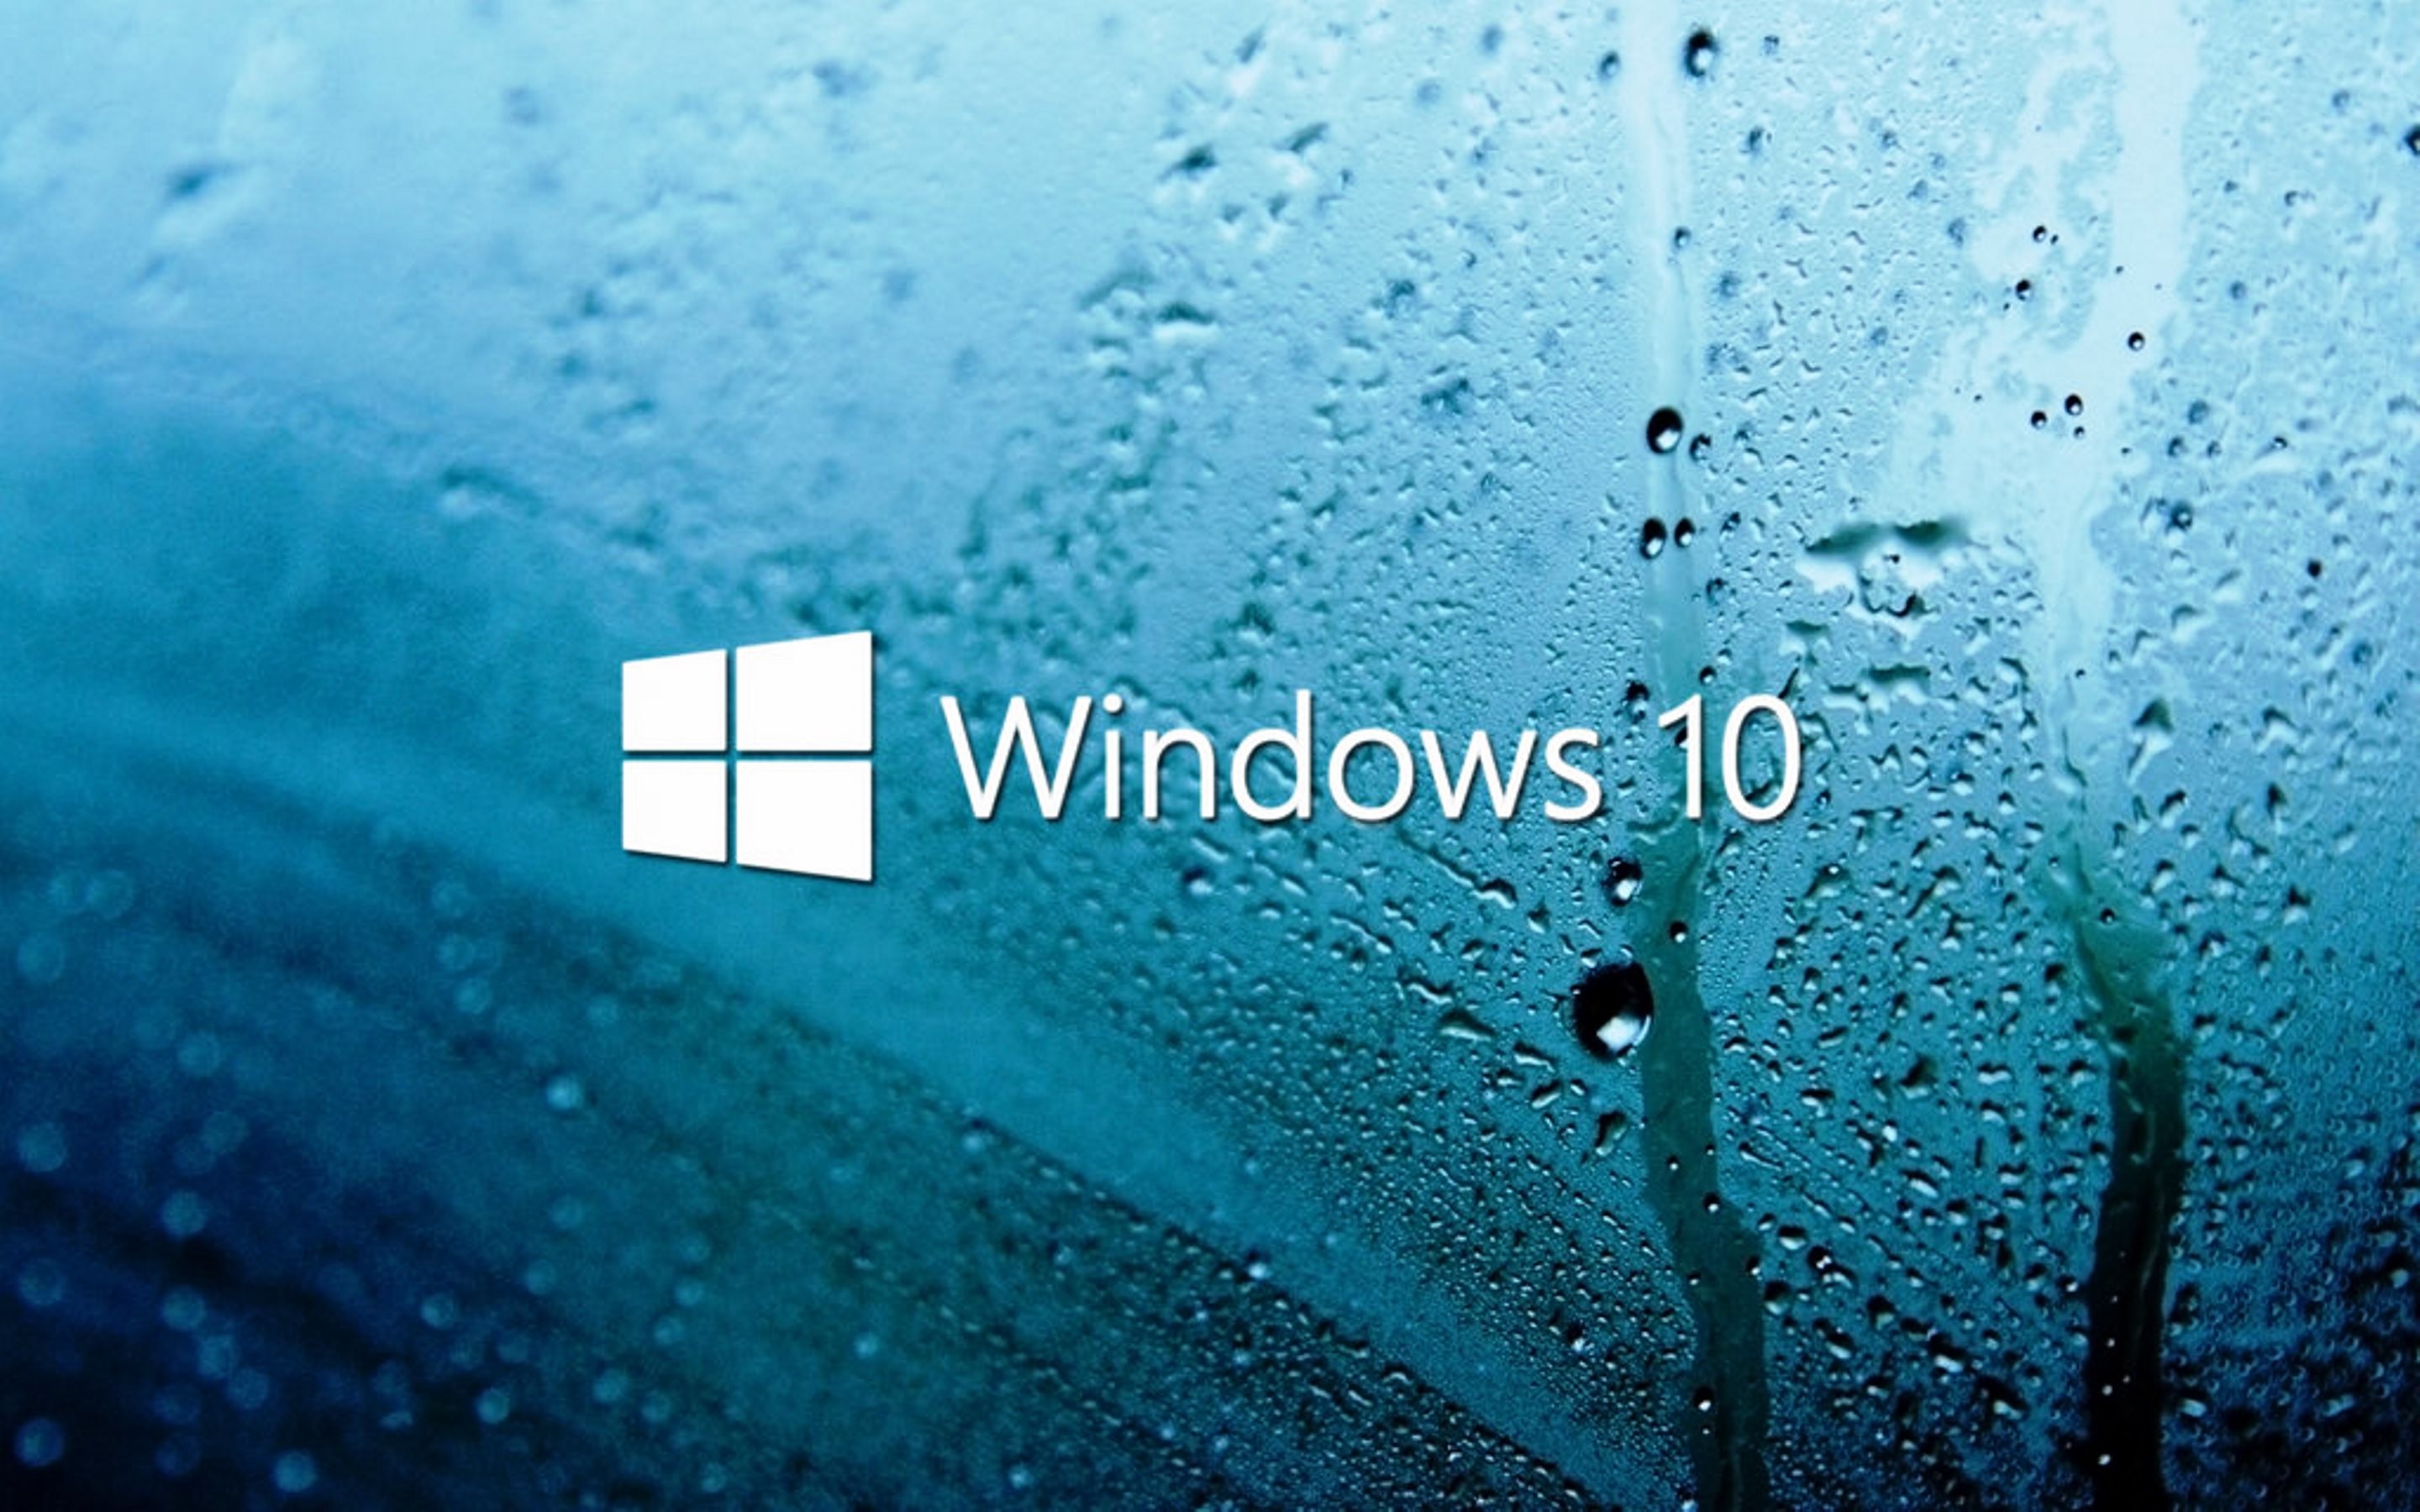 Nếu bạn đang tìm kiếm một hình nền Windows 10 đẹp và sắc nét với độ phân giải 1080p, bạn đã đến đúng nơi! Hãy chọn cho mình bức ảnh ưa thích và thể hiện phong cách của bạn với một màn hình độc đáo và tuyệt vời. Mời bạn khám phá ngay!